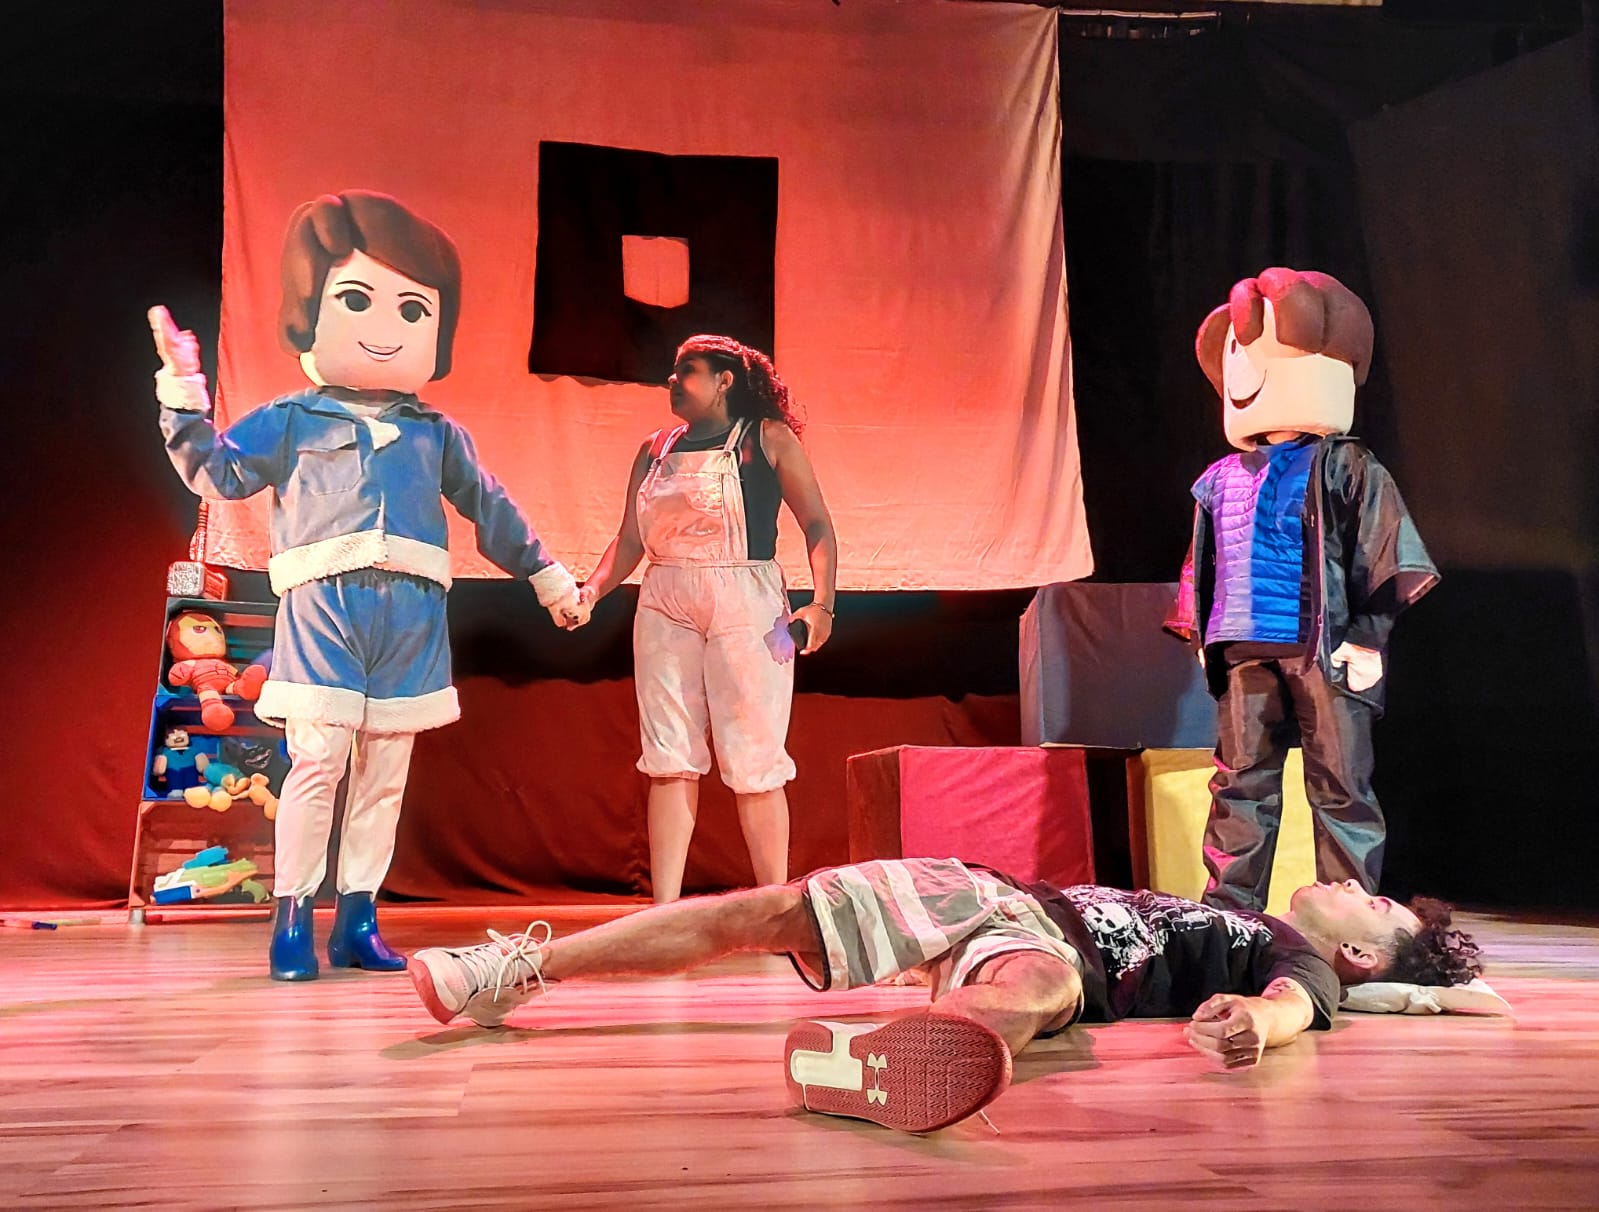 Jogo de sucesso entre os pequenos, Roblox anima o palco do Teatro Monte  Calvário